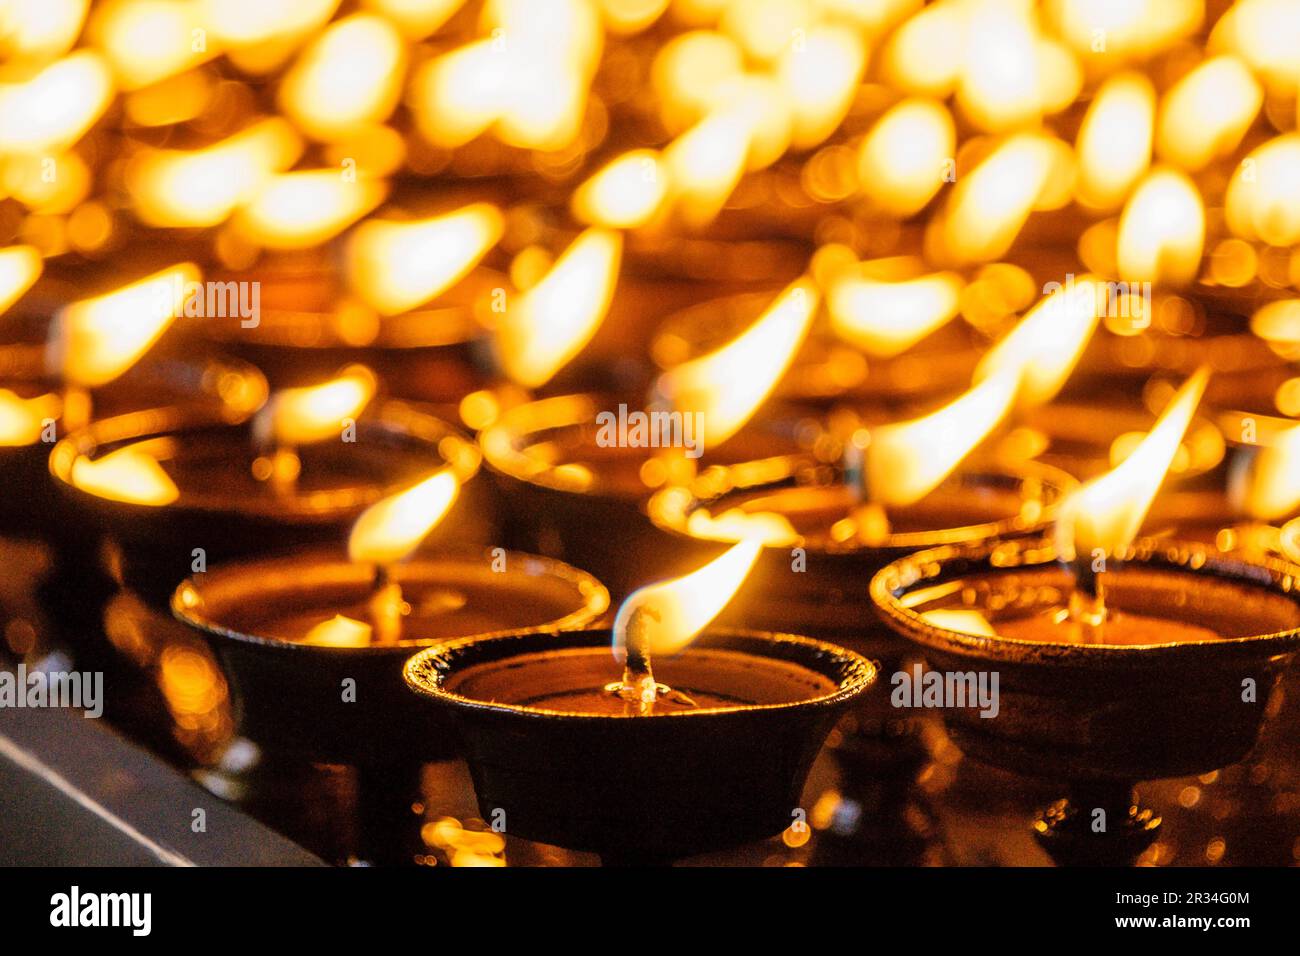 Swayambhu.Centro religioso de peregrinación tanto como para budistas hinduistas.Katmandou, Népal, Asie. Banque D'Images